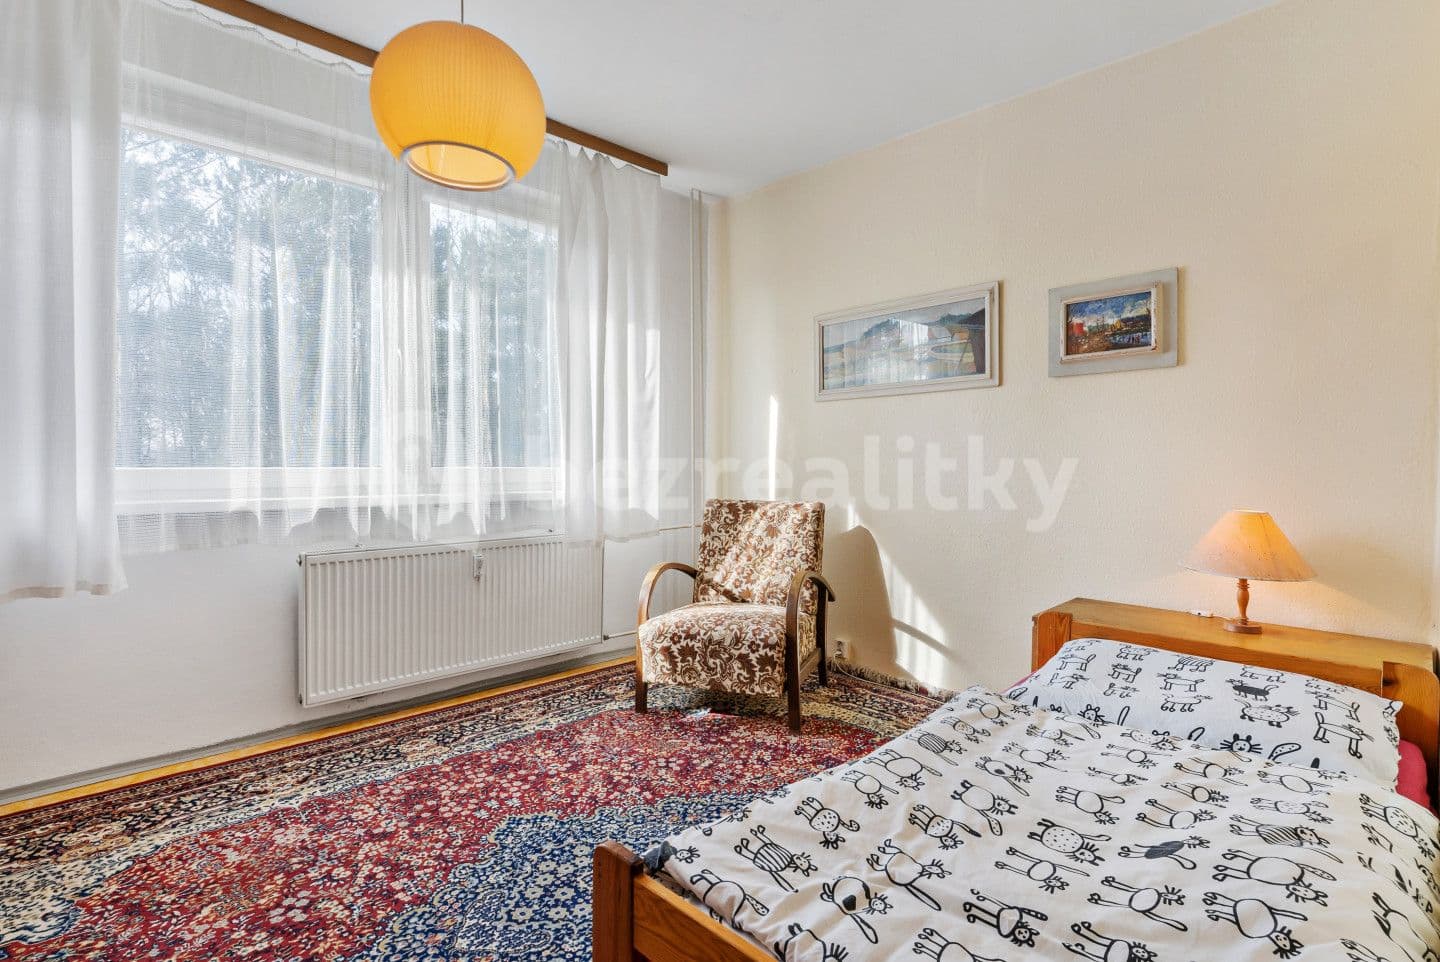 4 bedroom flat for sale, 85 m², Střelnice, Česká Lípa, Liberecký Region